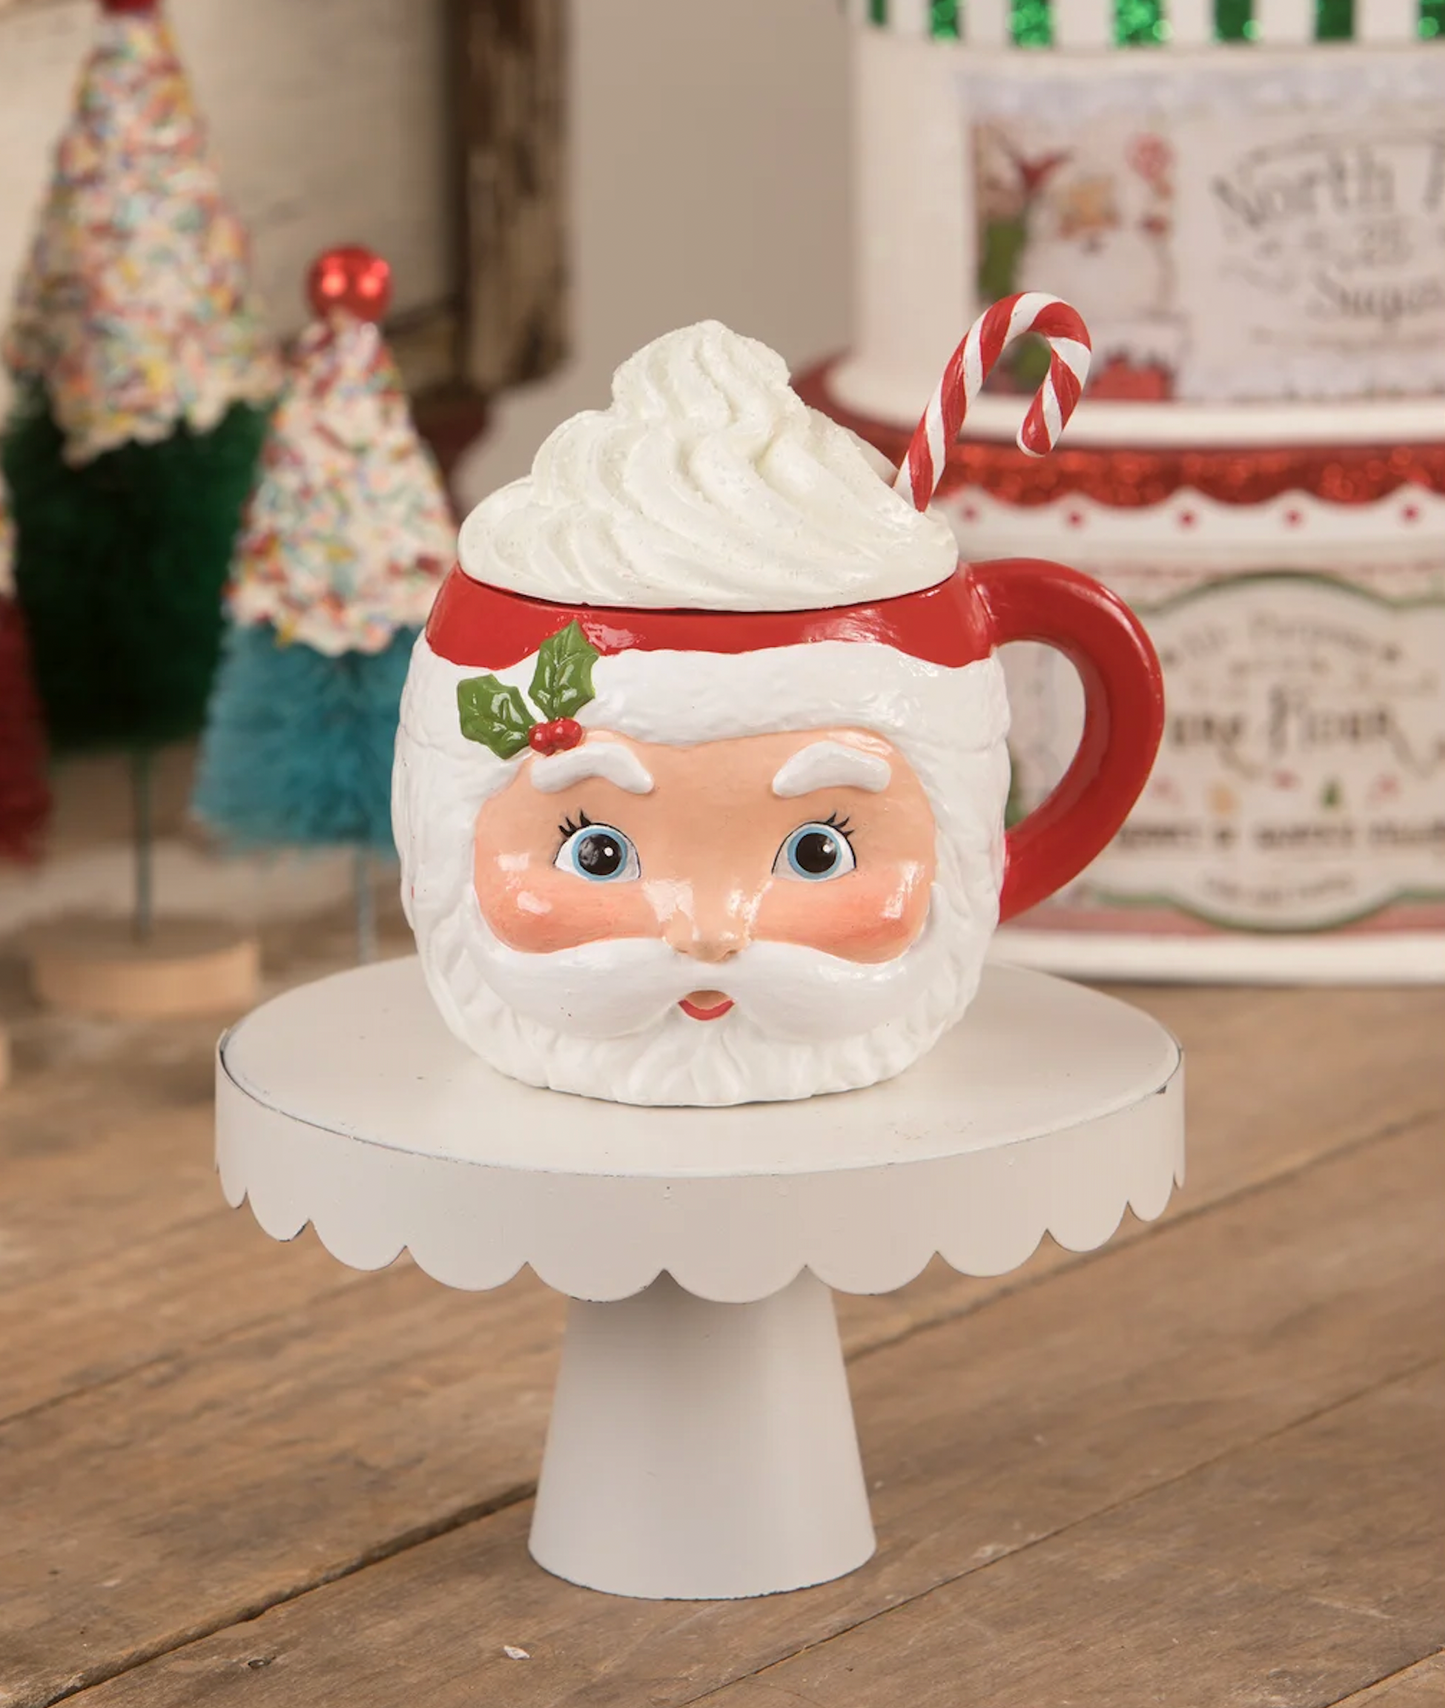 TF1239 - Sweet Tidings Santa Head Mug